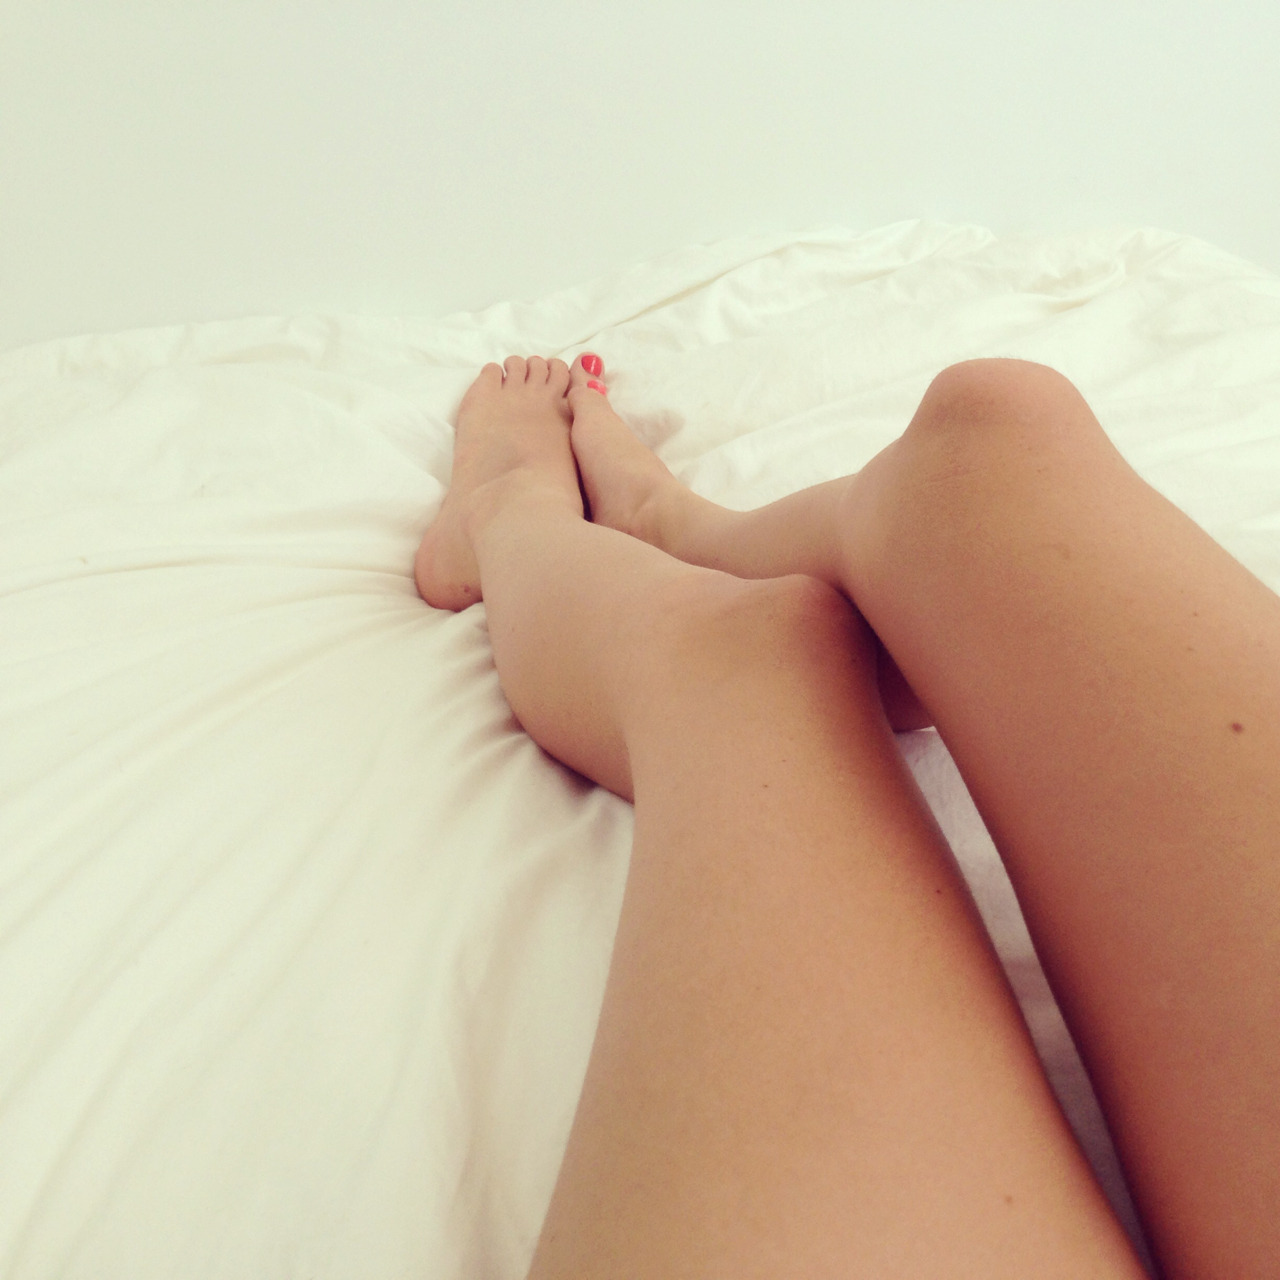 Жена после душа на кровате раздвинула ноги фото